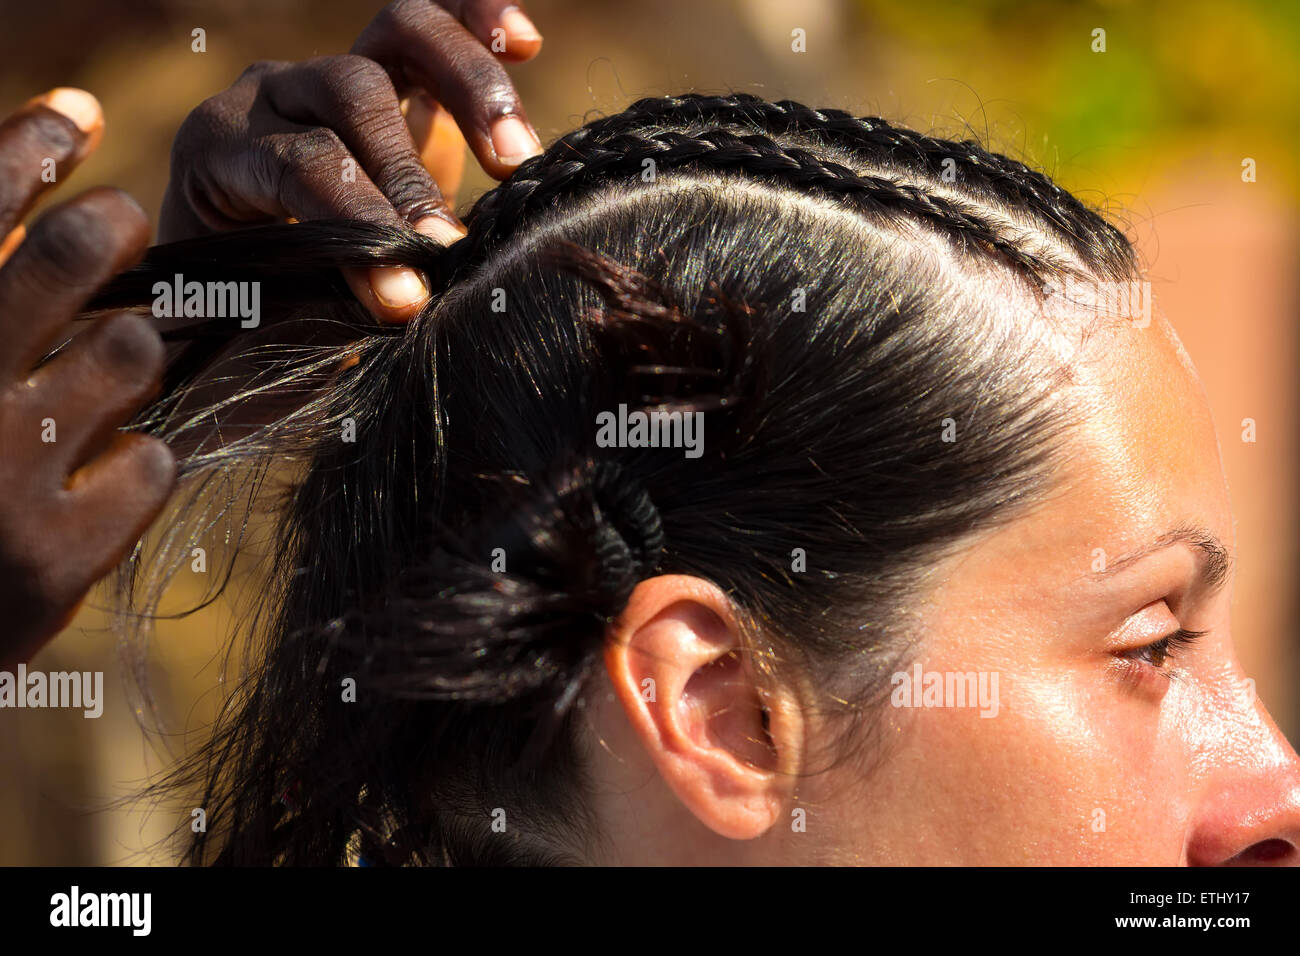 Traditionelle Afrikanische Frisuren Auf Weisse Frauen Stockfotografie Alamy